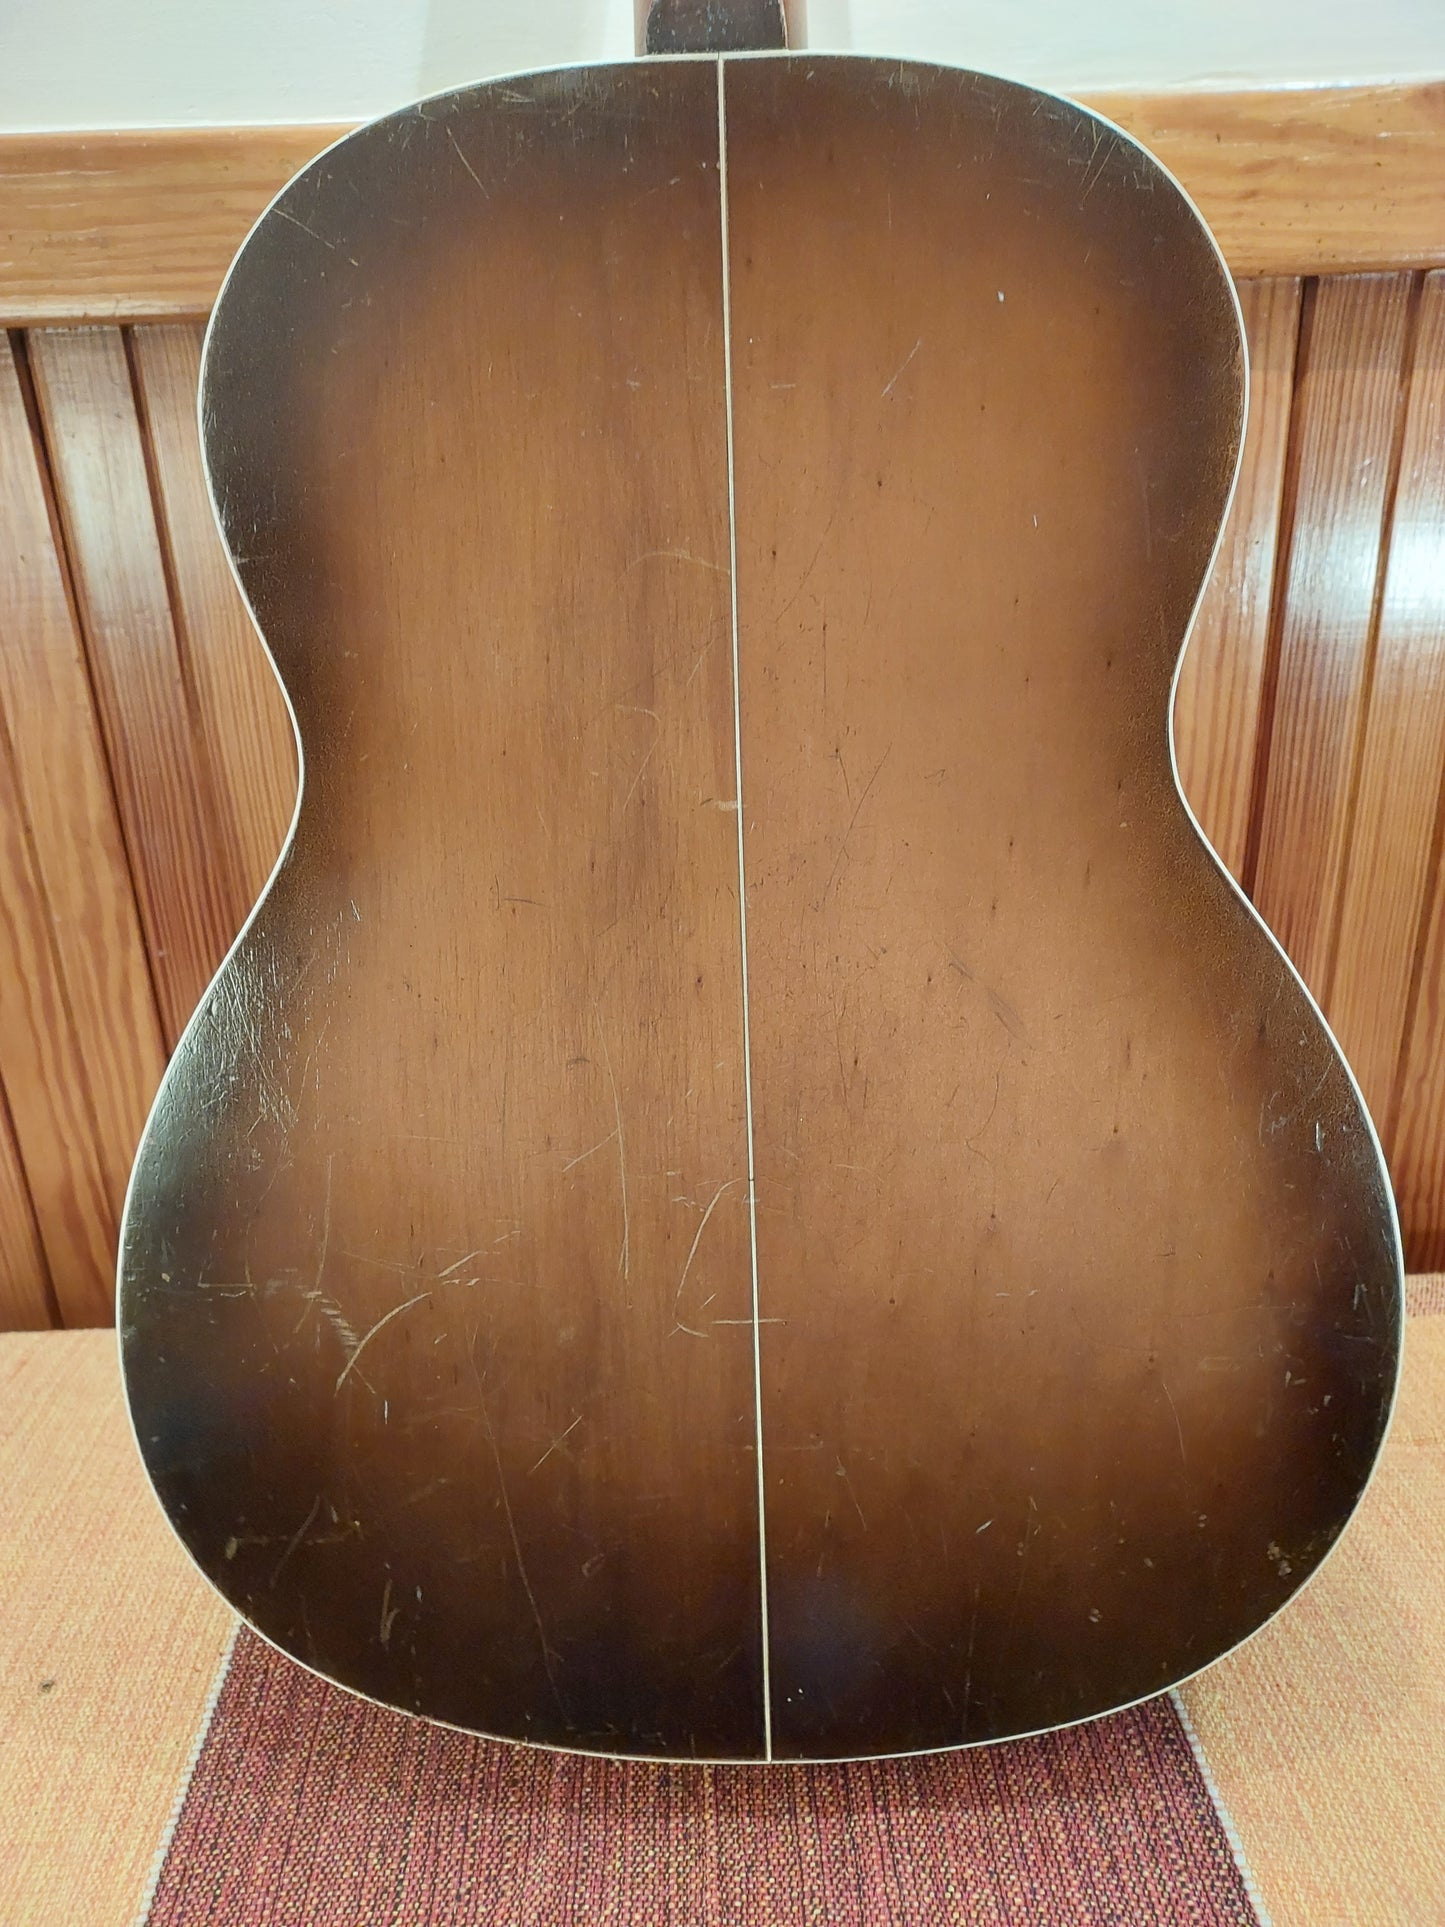 (D2) 1950s 6-string Del Vecchio acoustic/electric resonator guitar (brown sunburst)